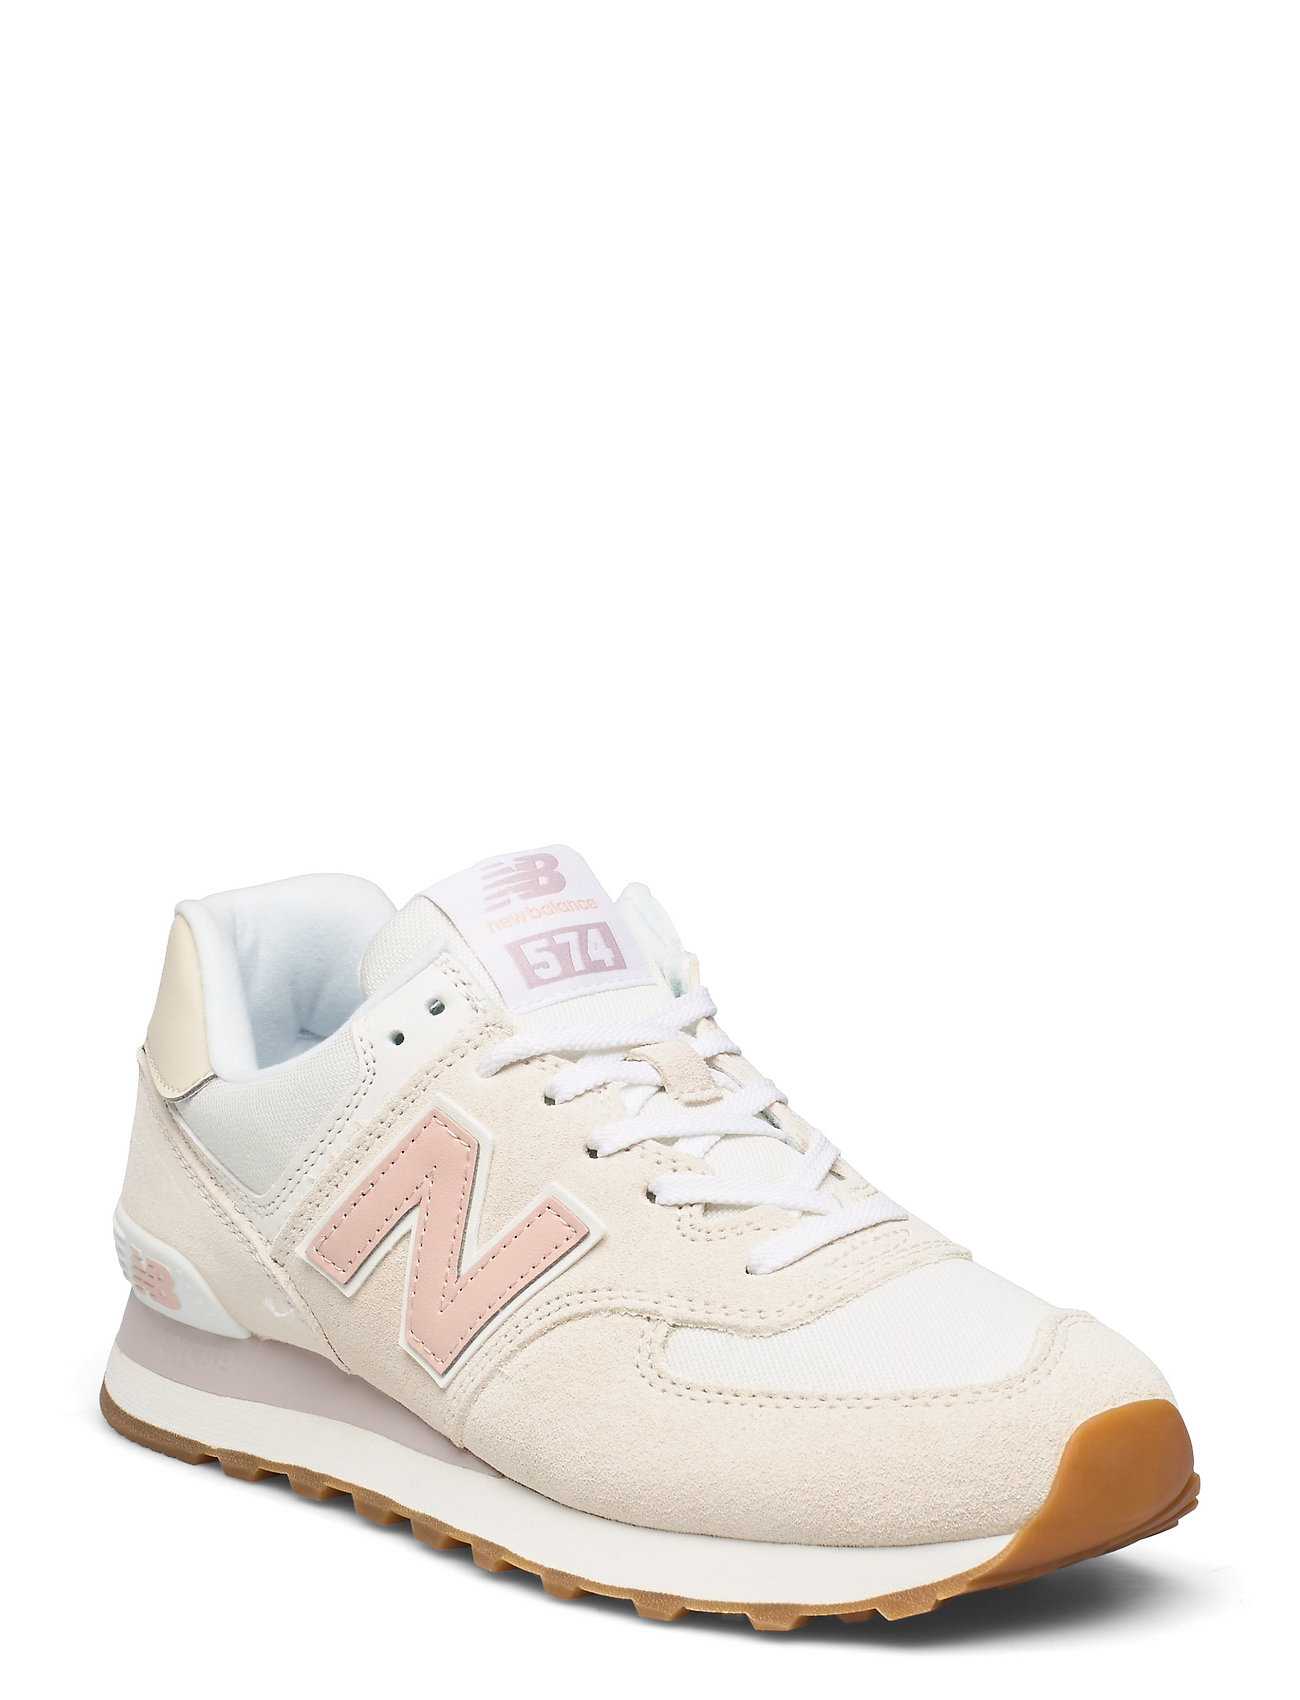 Wl574nr2 Matalavartiset Sneakerit Tennarit Valkoinen New Balance